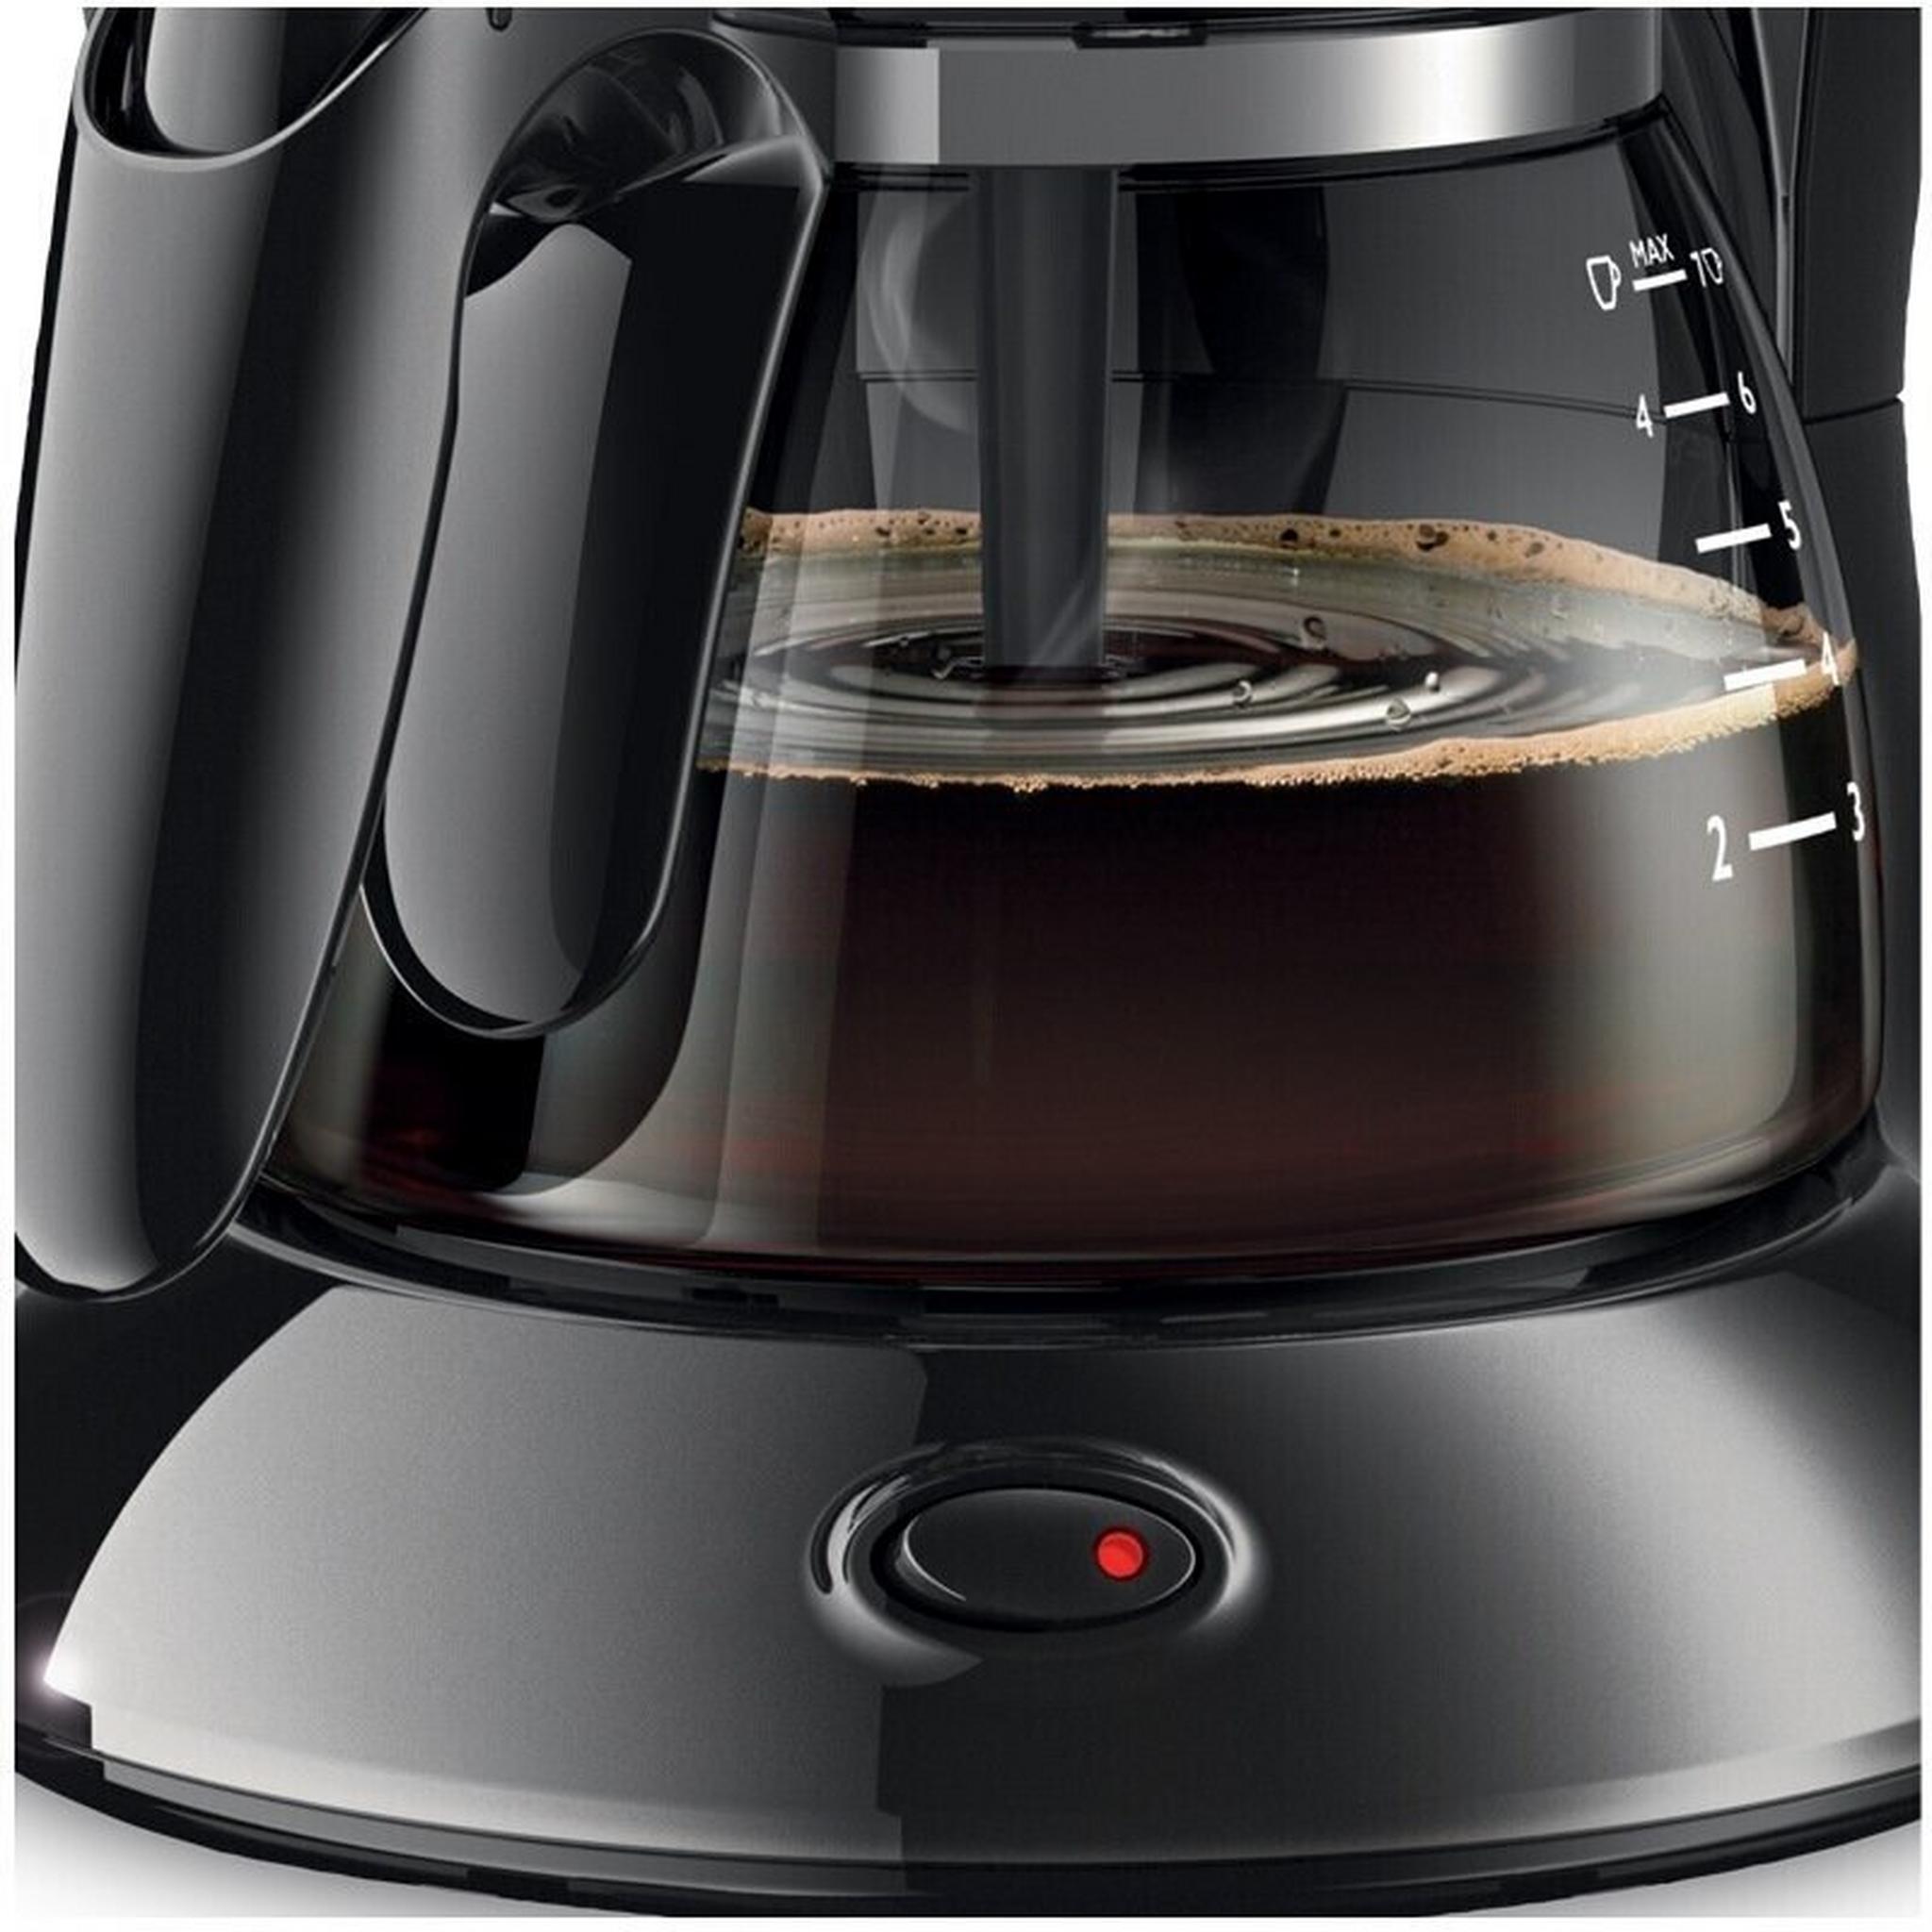 ماكينة تحضير القهوة من فيليبس، قدرة 750 وات، سعة 0.6 لتر، HD7432/20 – أسود